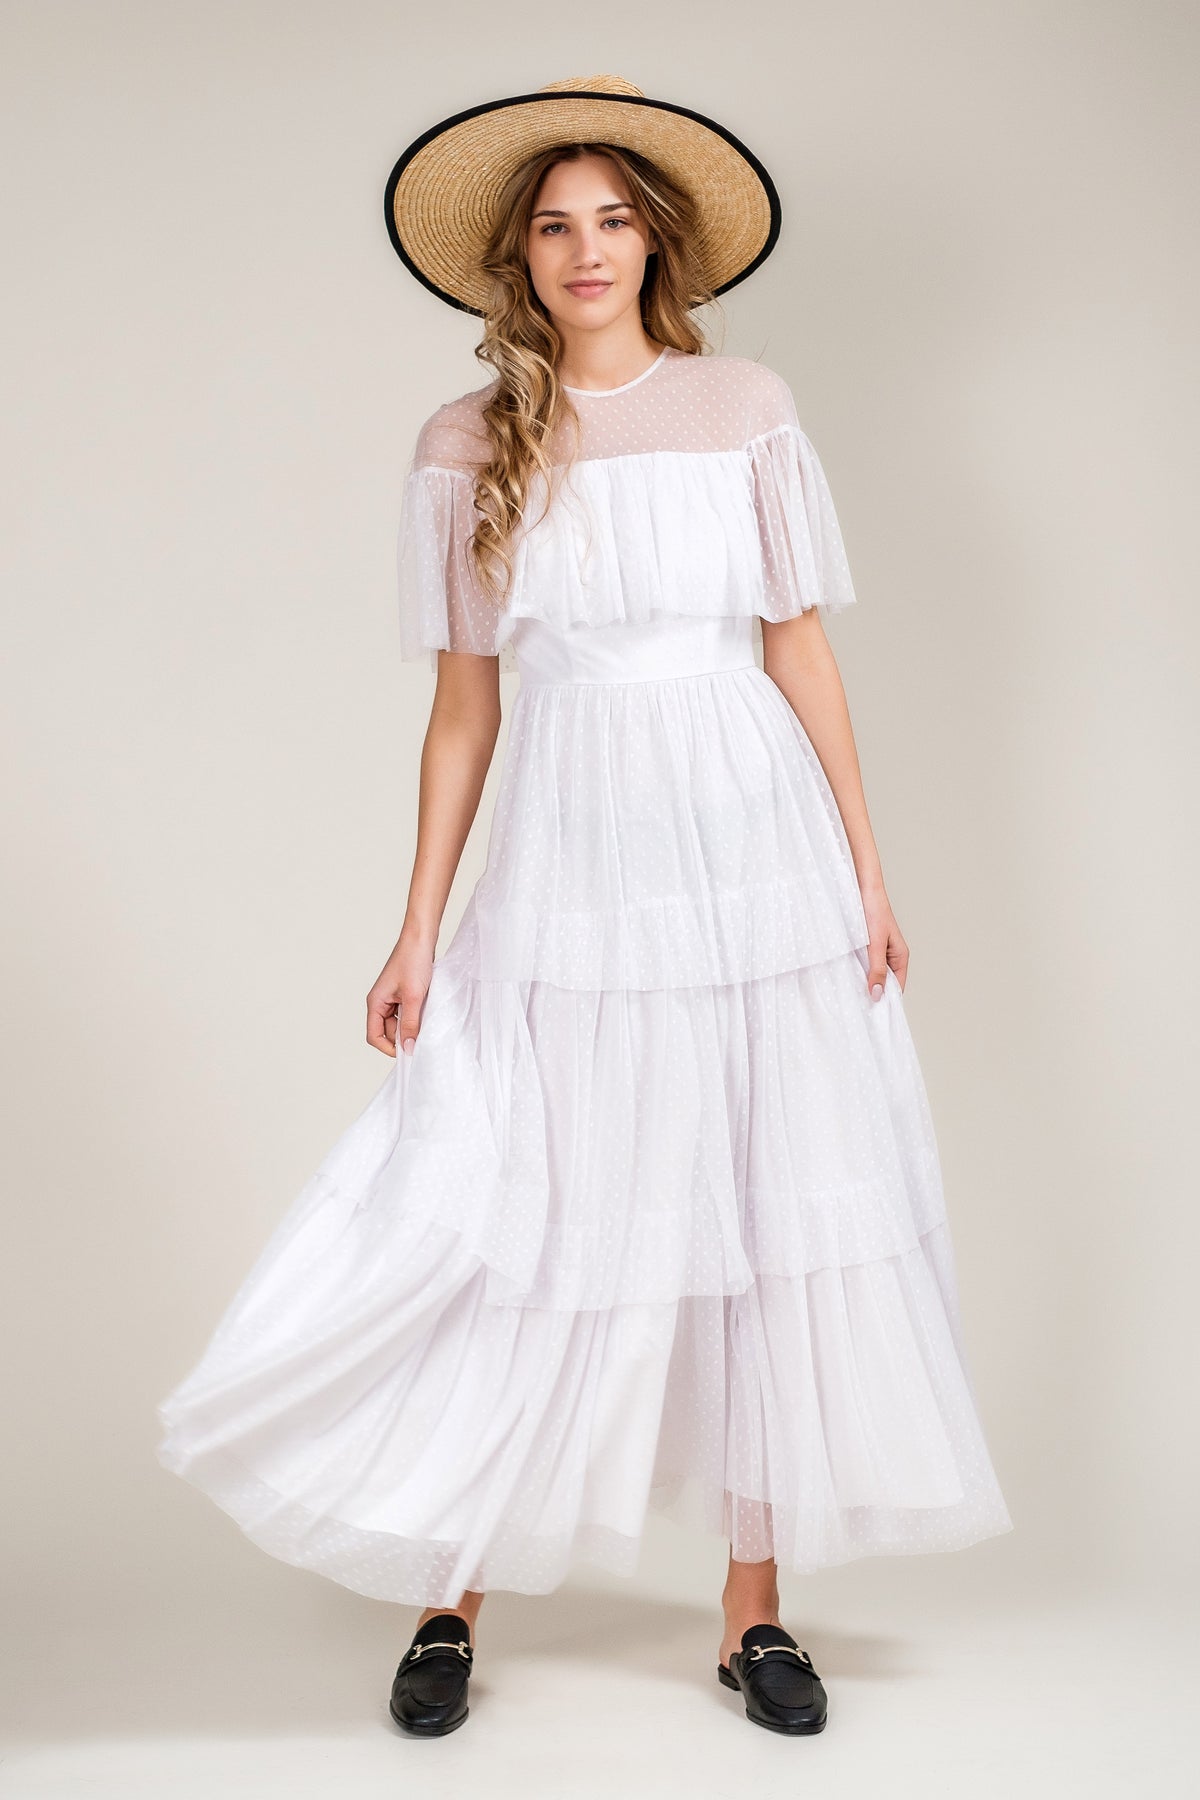 white long tulle dress front wide skirt medium long sleeves